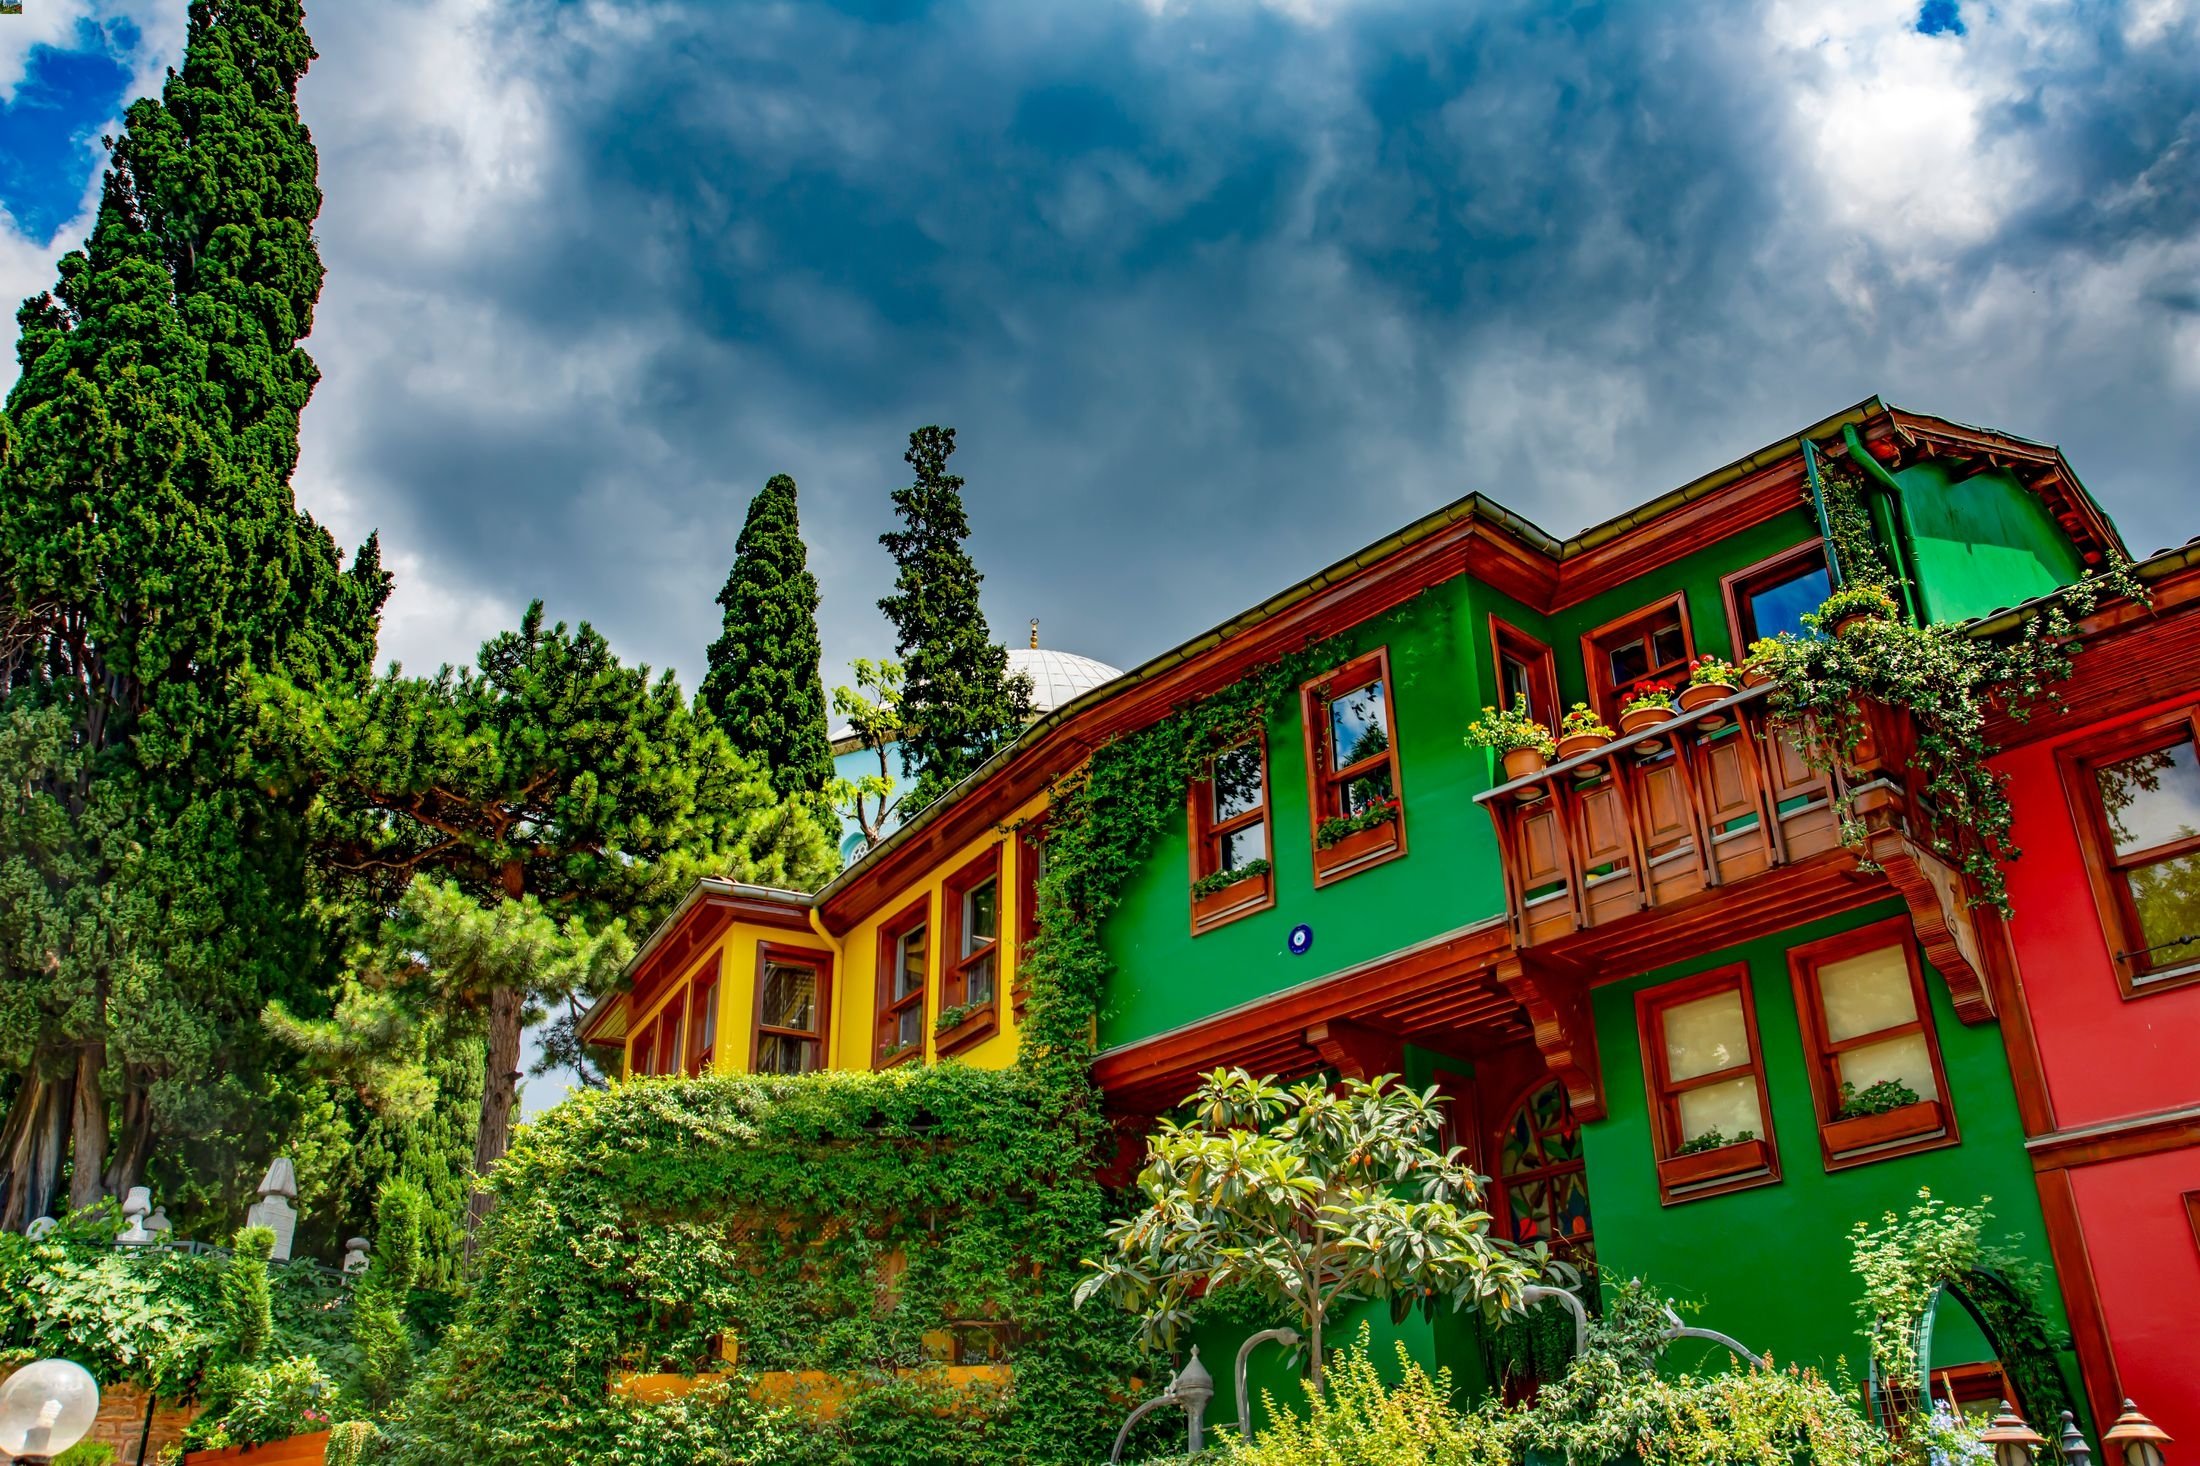 Rumah tua penuh warna bersejarah ada di mana-mana di Bursa, Türkiye.  (Foto Shutterstock)